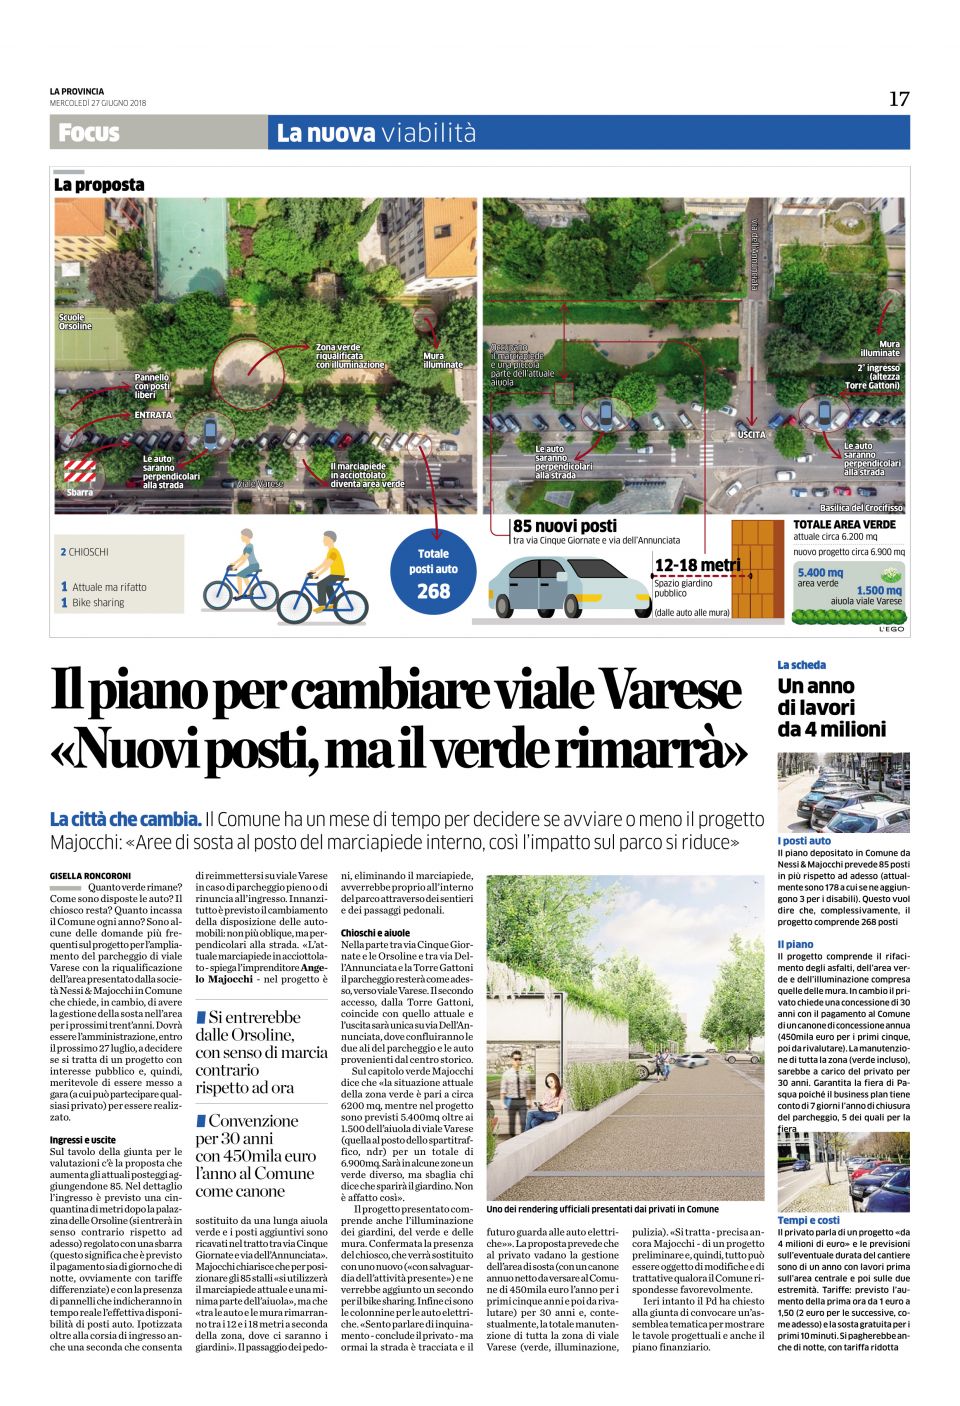 Il piano per cambiare viale Varese